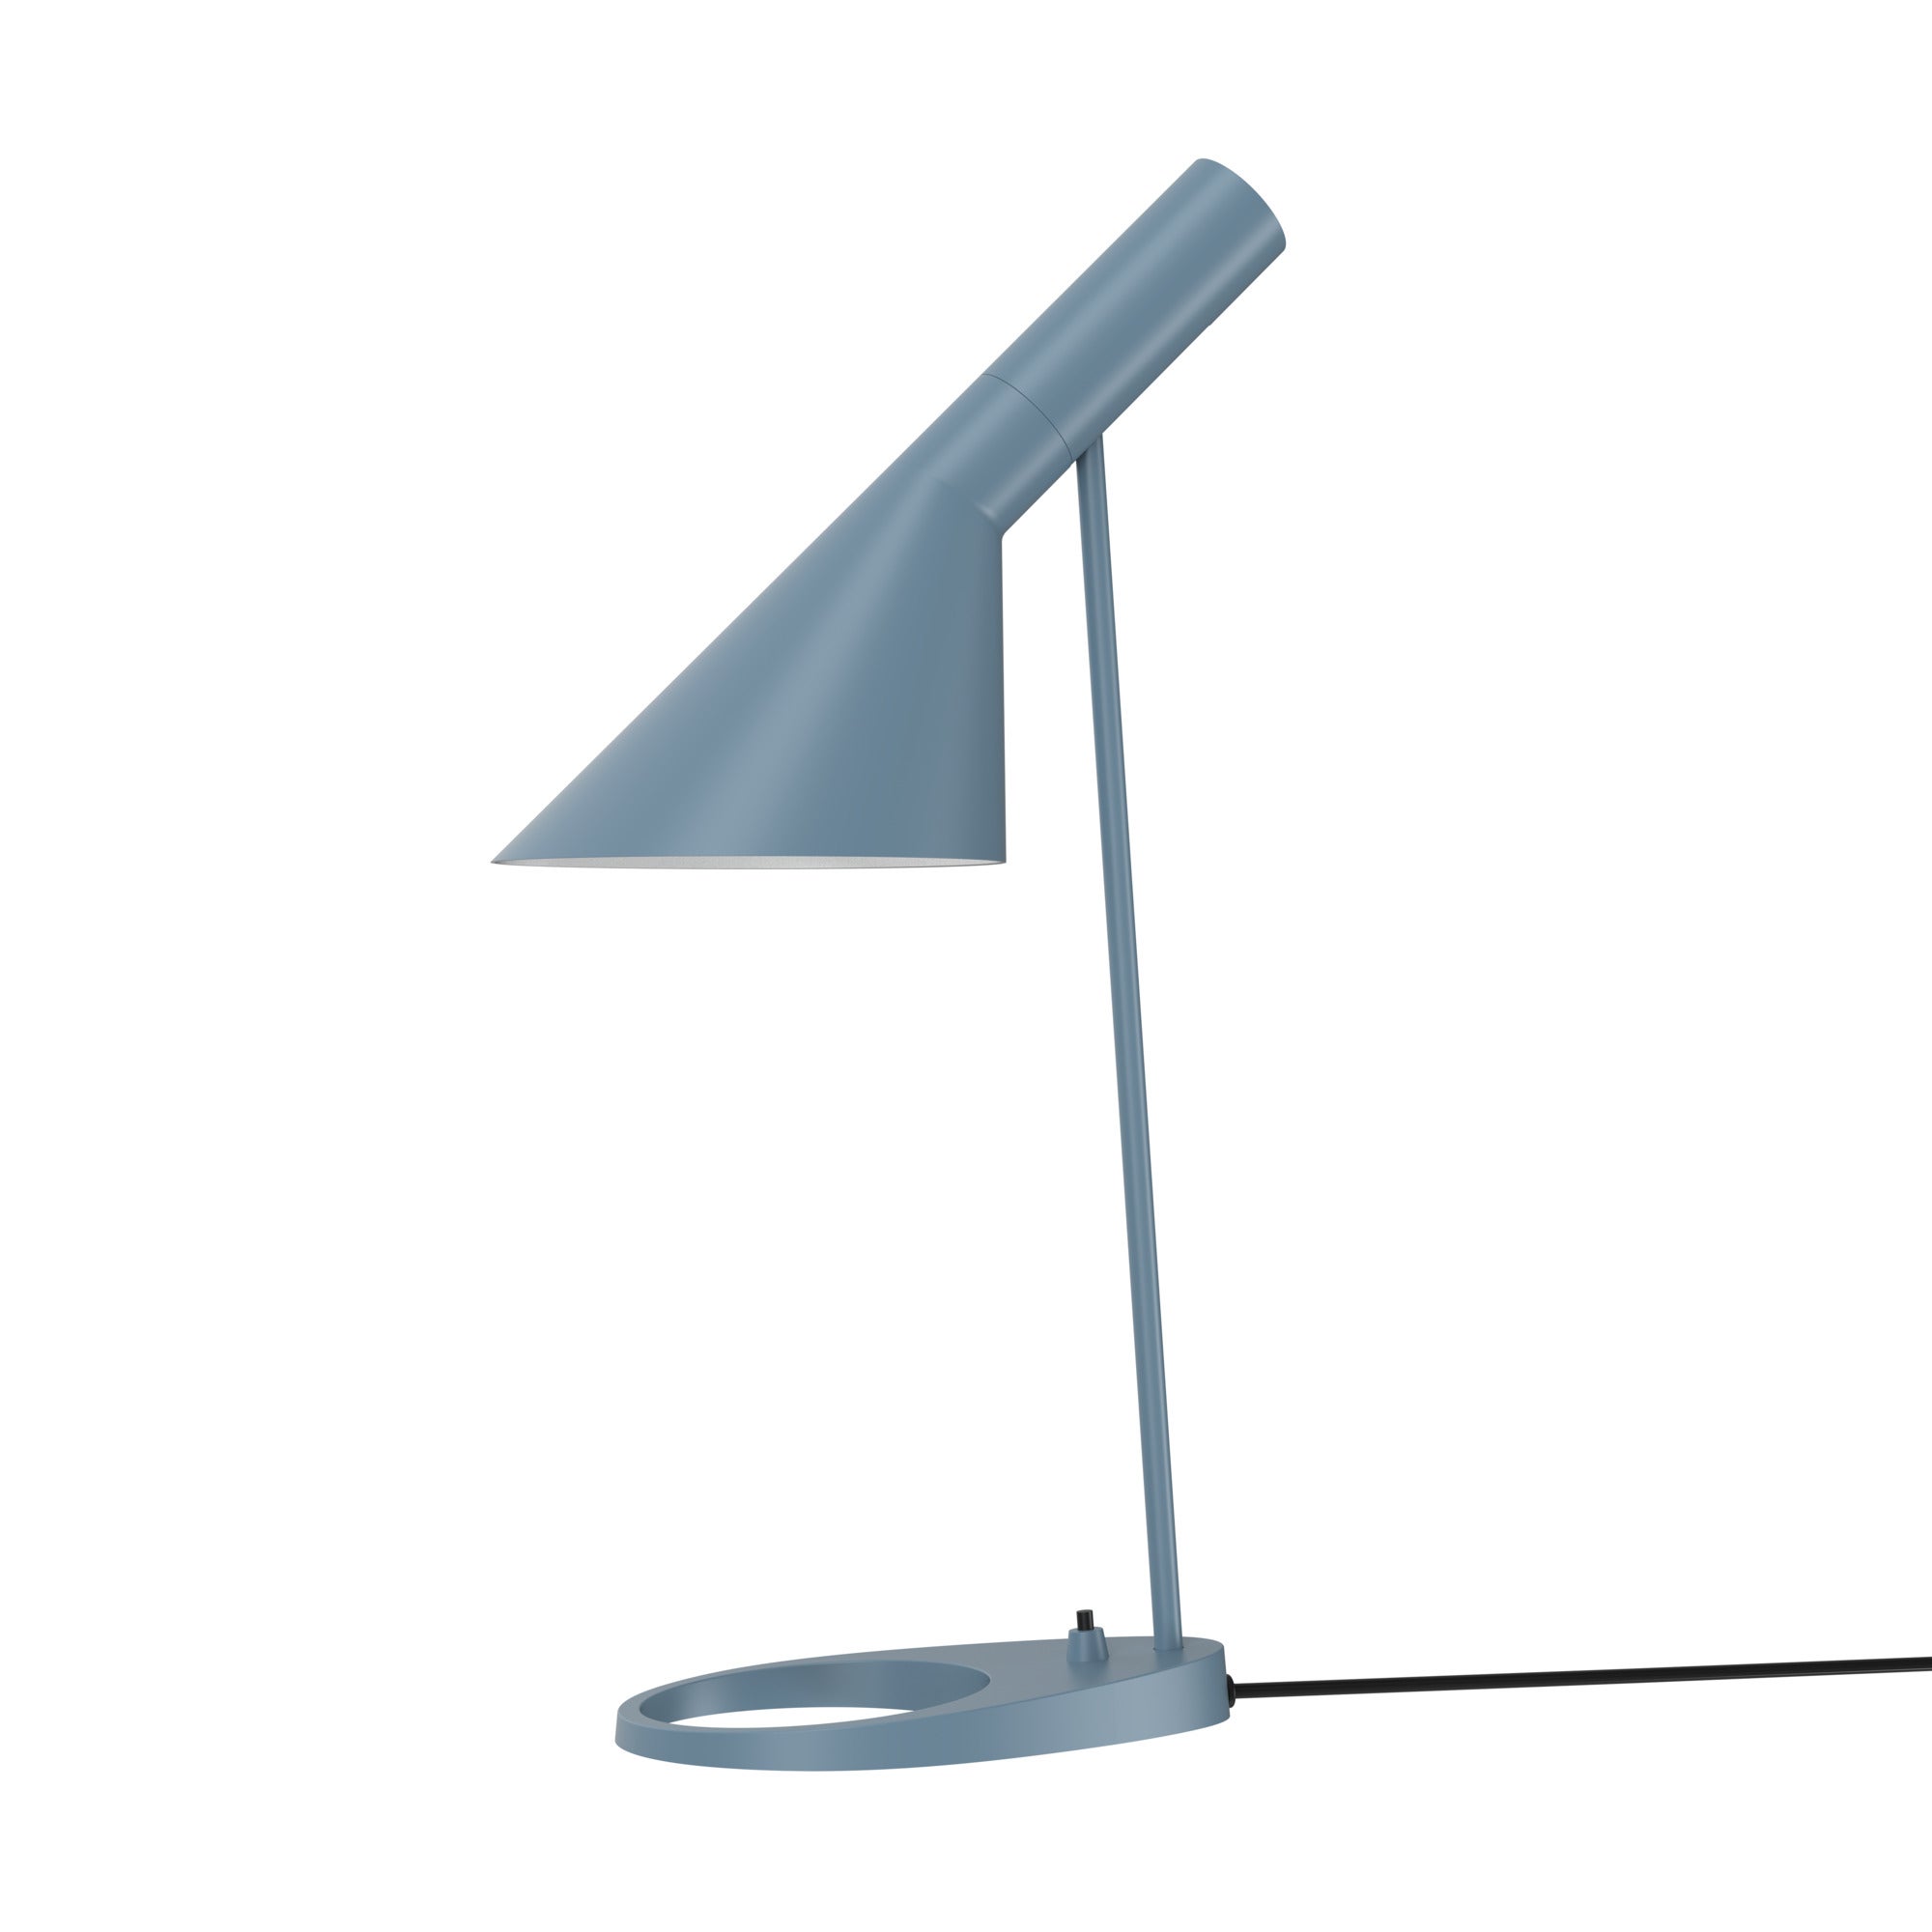 Arne Jacobsen AJ Table Lamp in Dusty Blue for Louis Poulsen For Sale